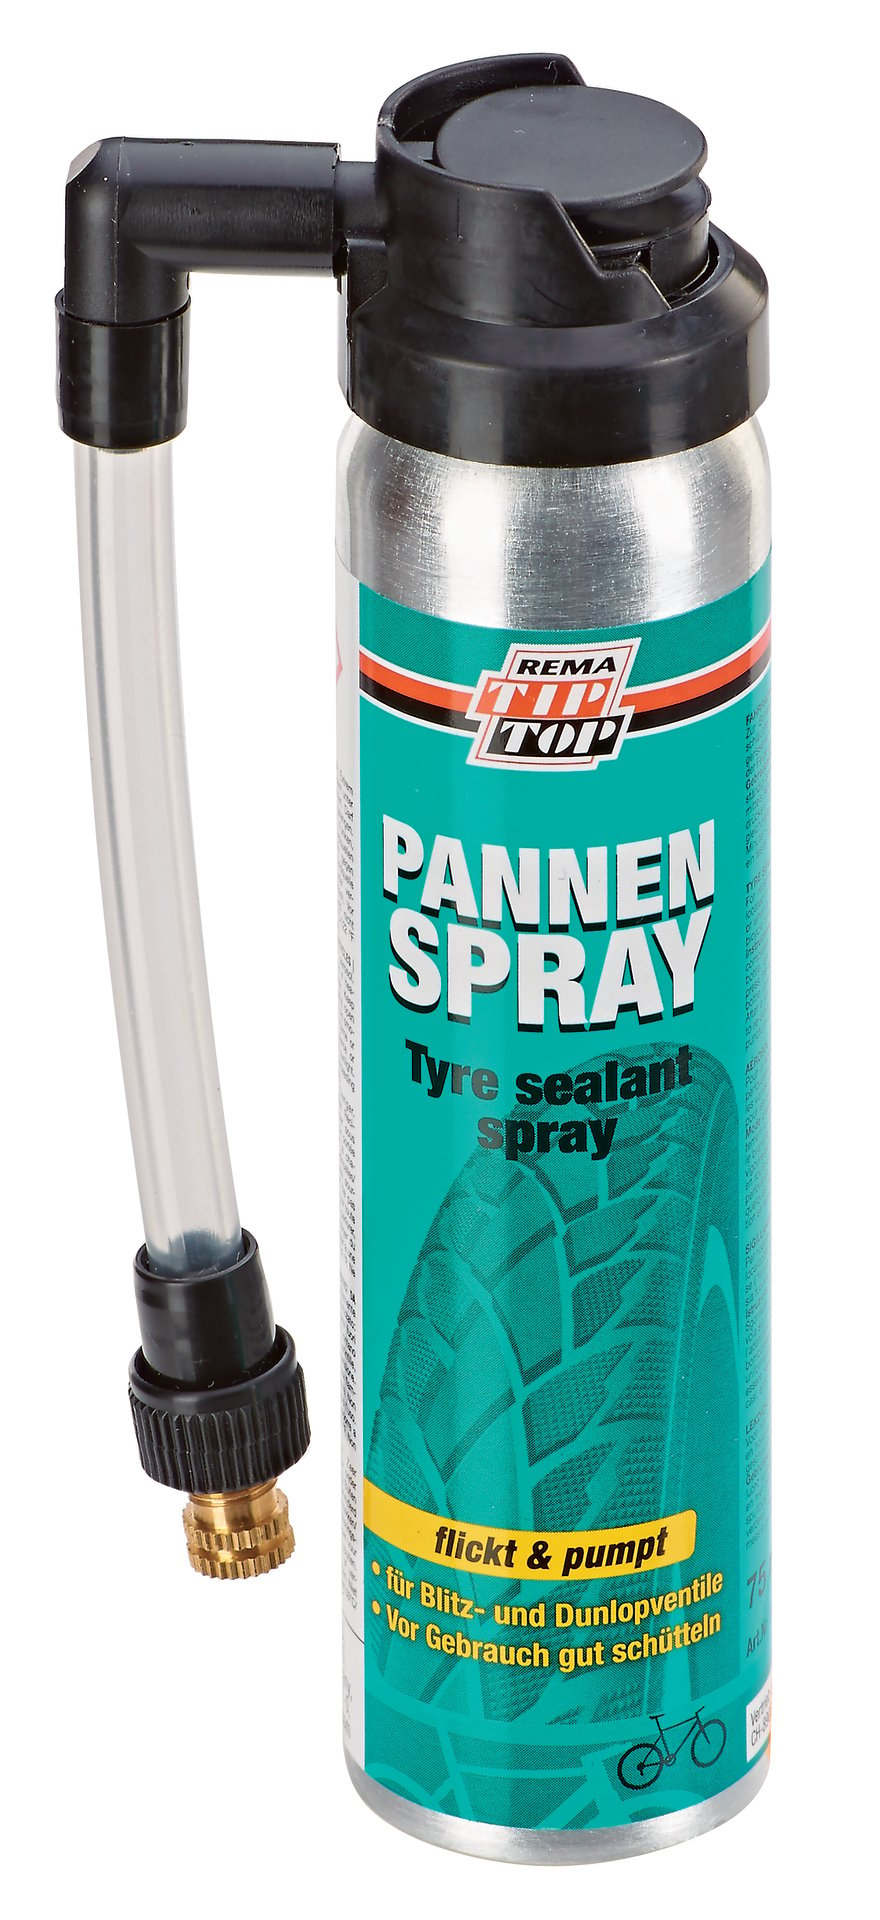 Rema Tip-Top Pannen-Spray 75ml